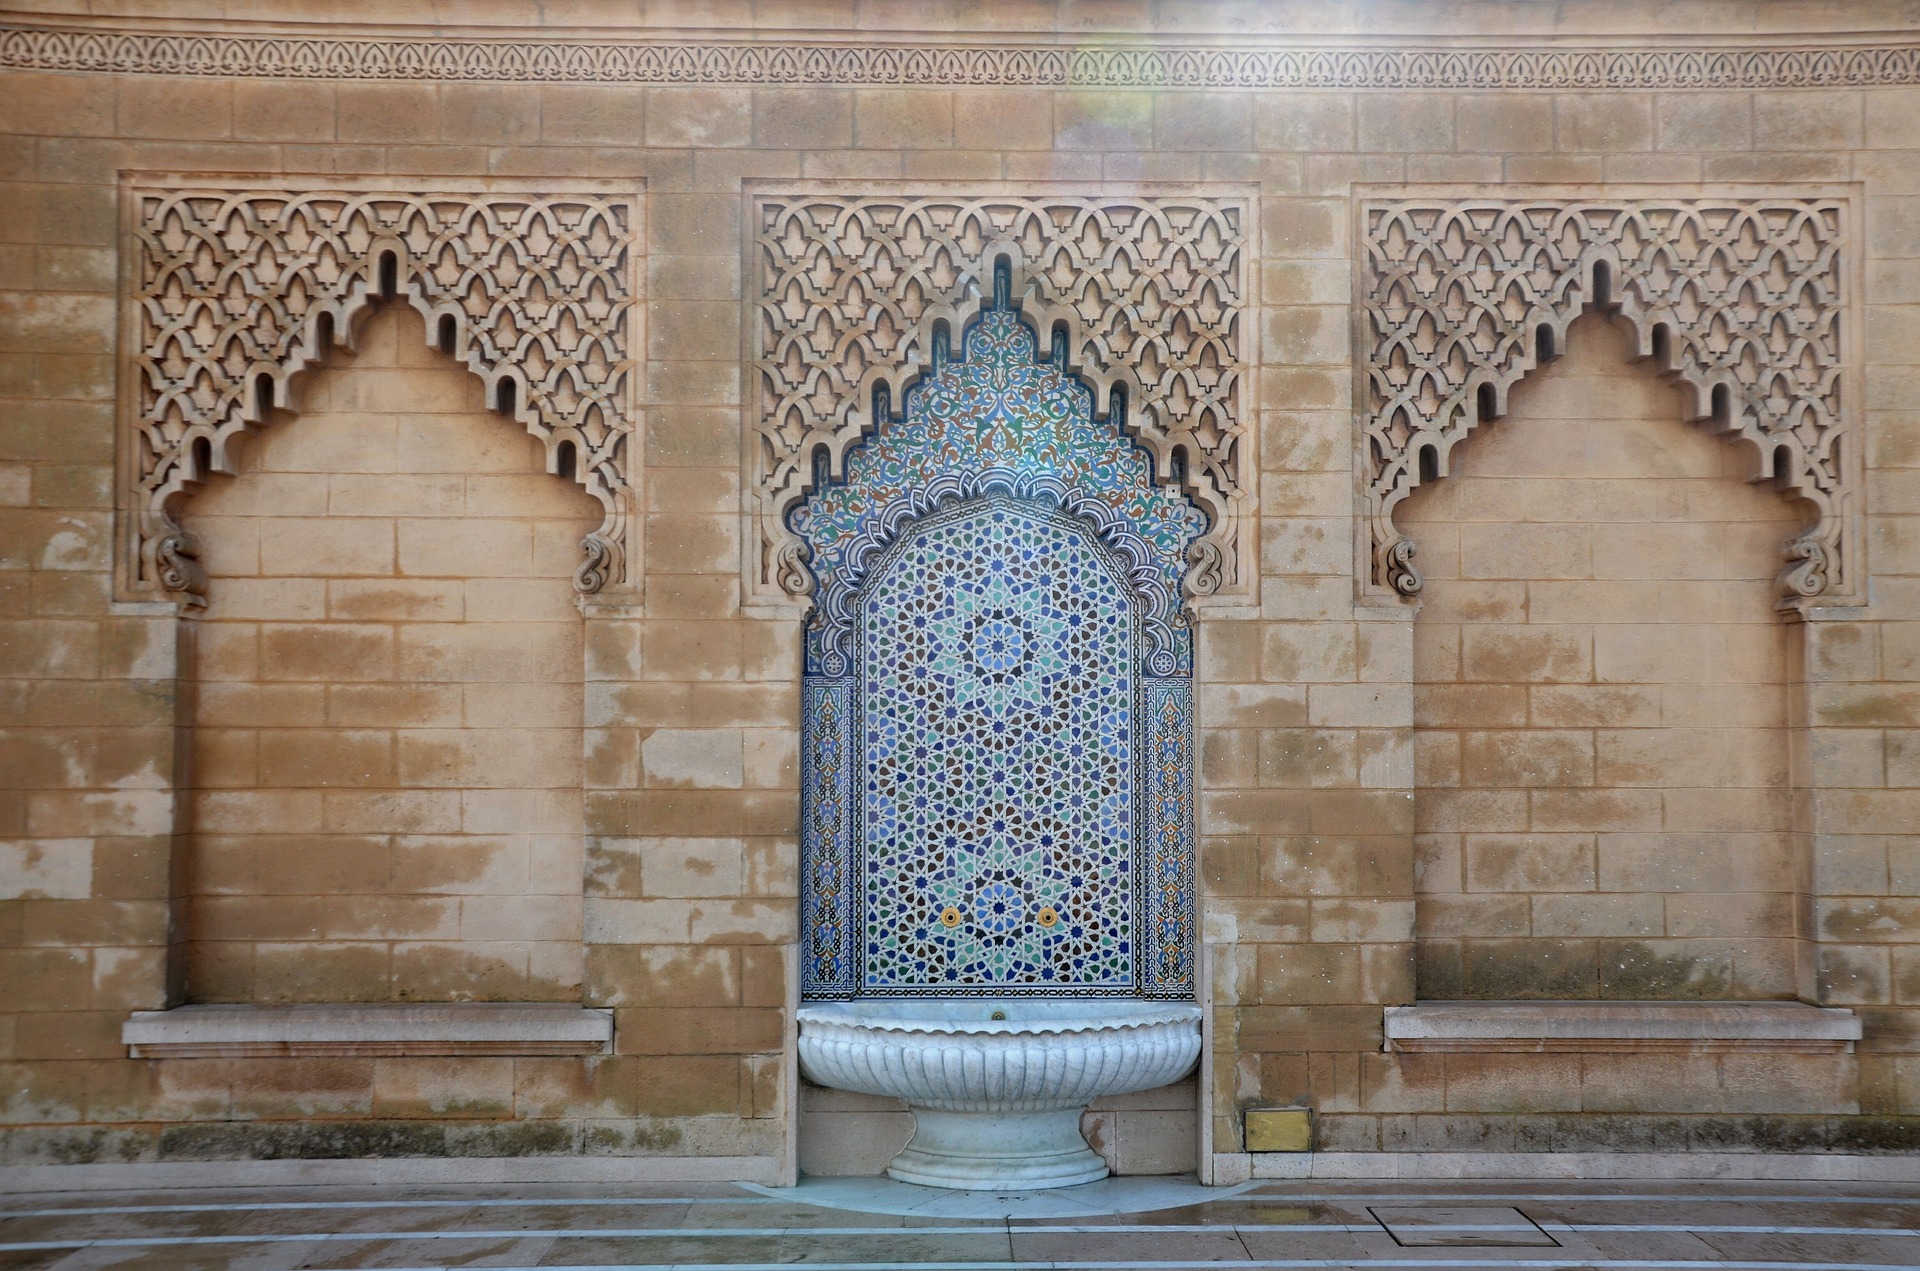 A fountain in Morocco 